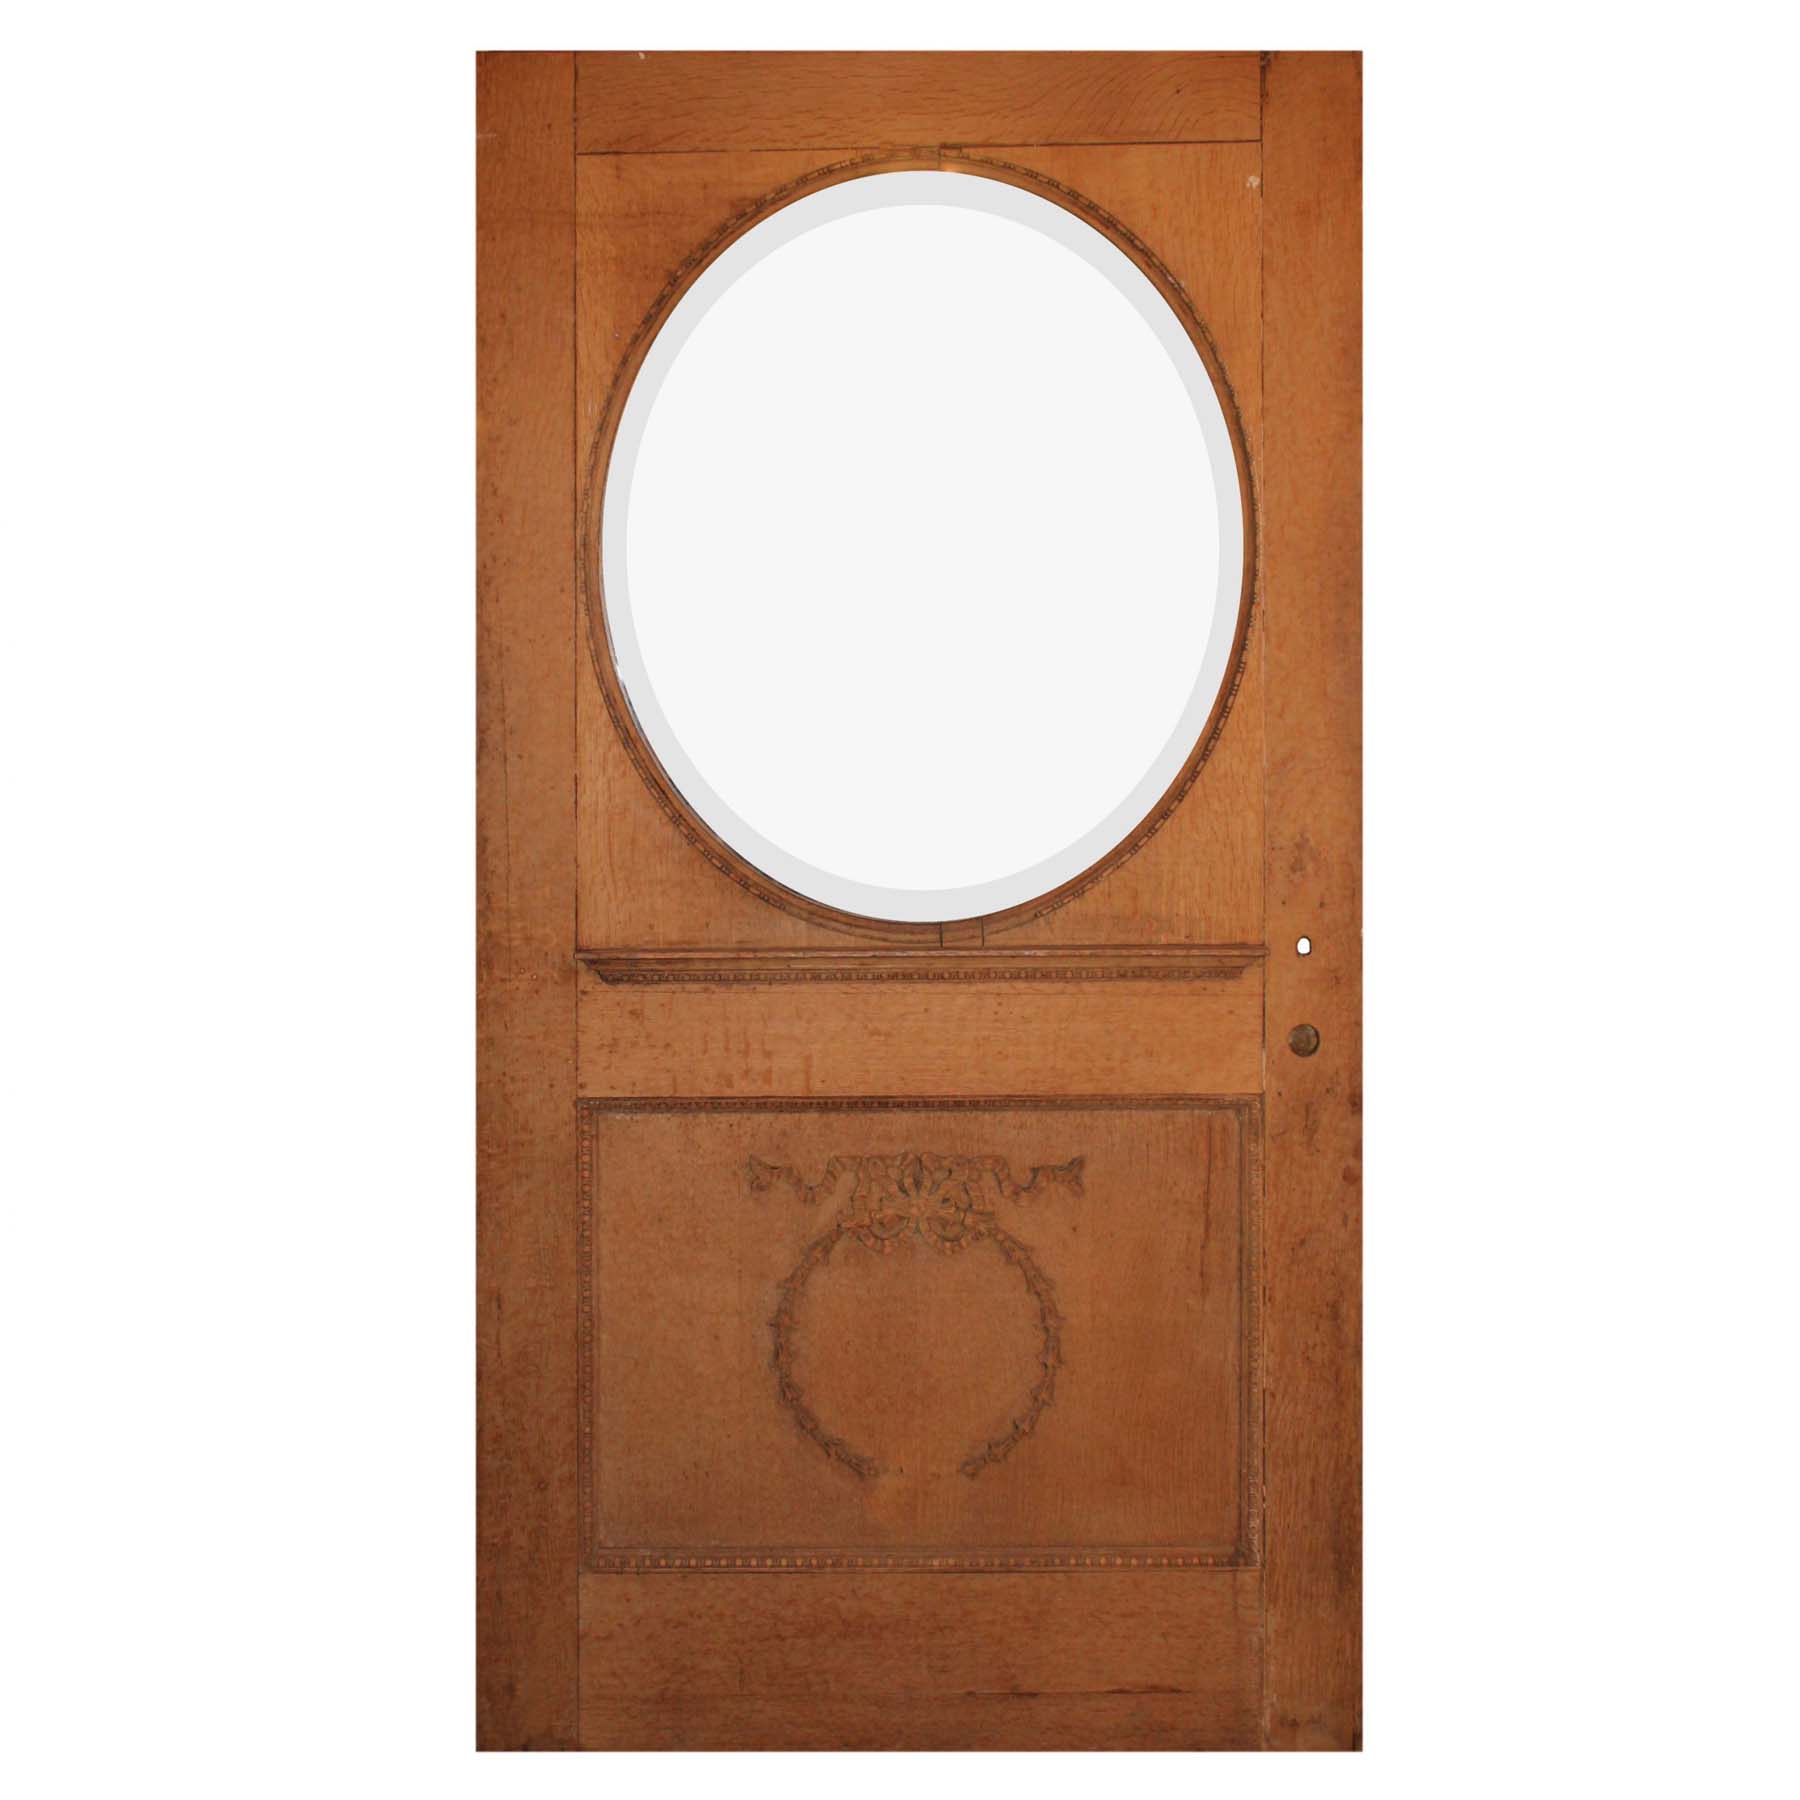 SOLD Reclaimed 42” Antique Neoclassical Door with Circular Window, c. 1910-0